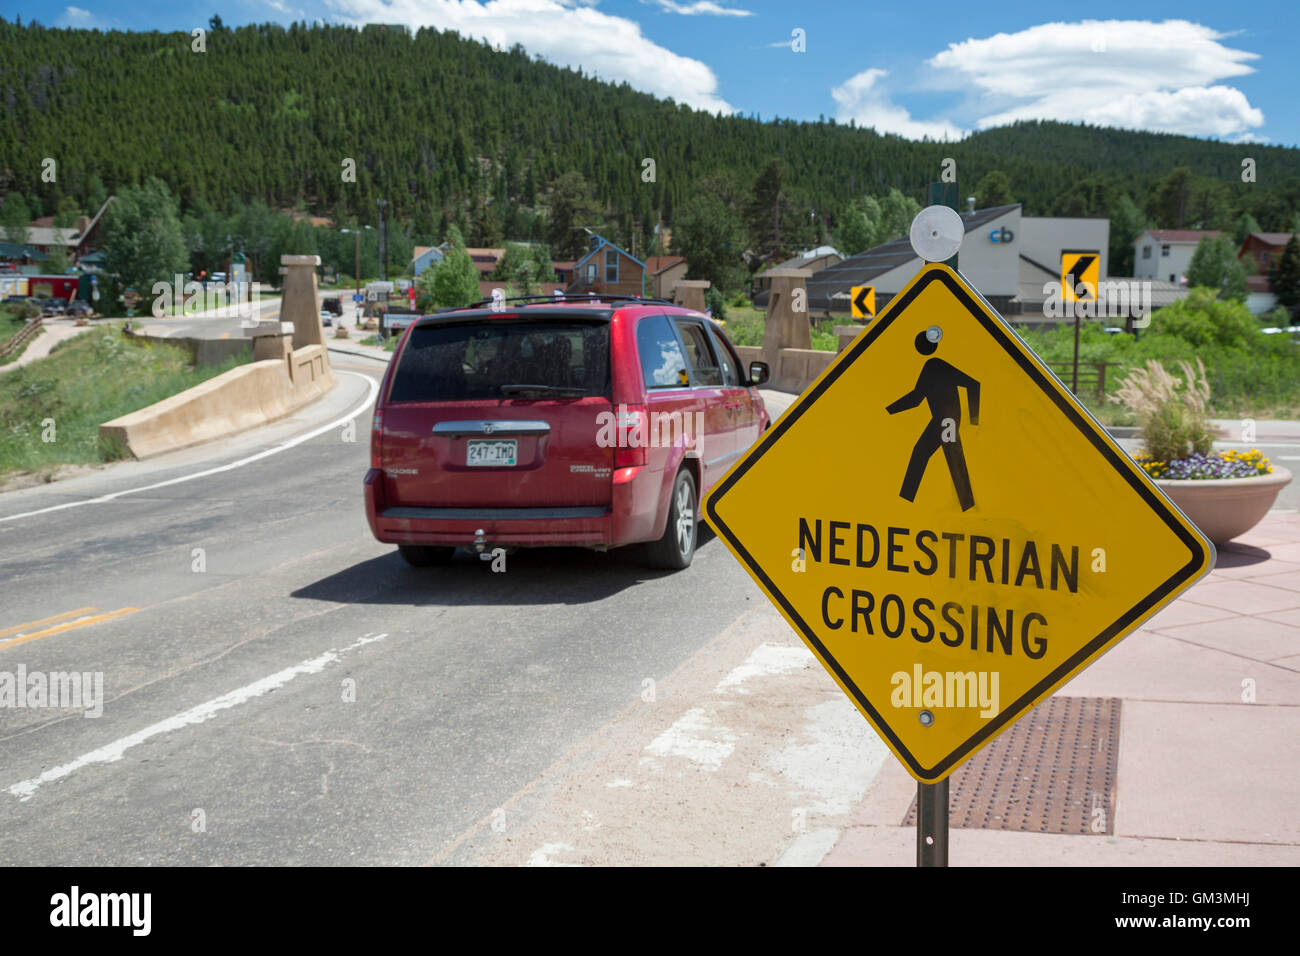 Nederland, Colorado - un attraversamento pedonale accedi a Colorado città di montagna. Foto Stock